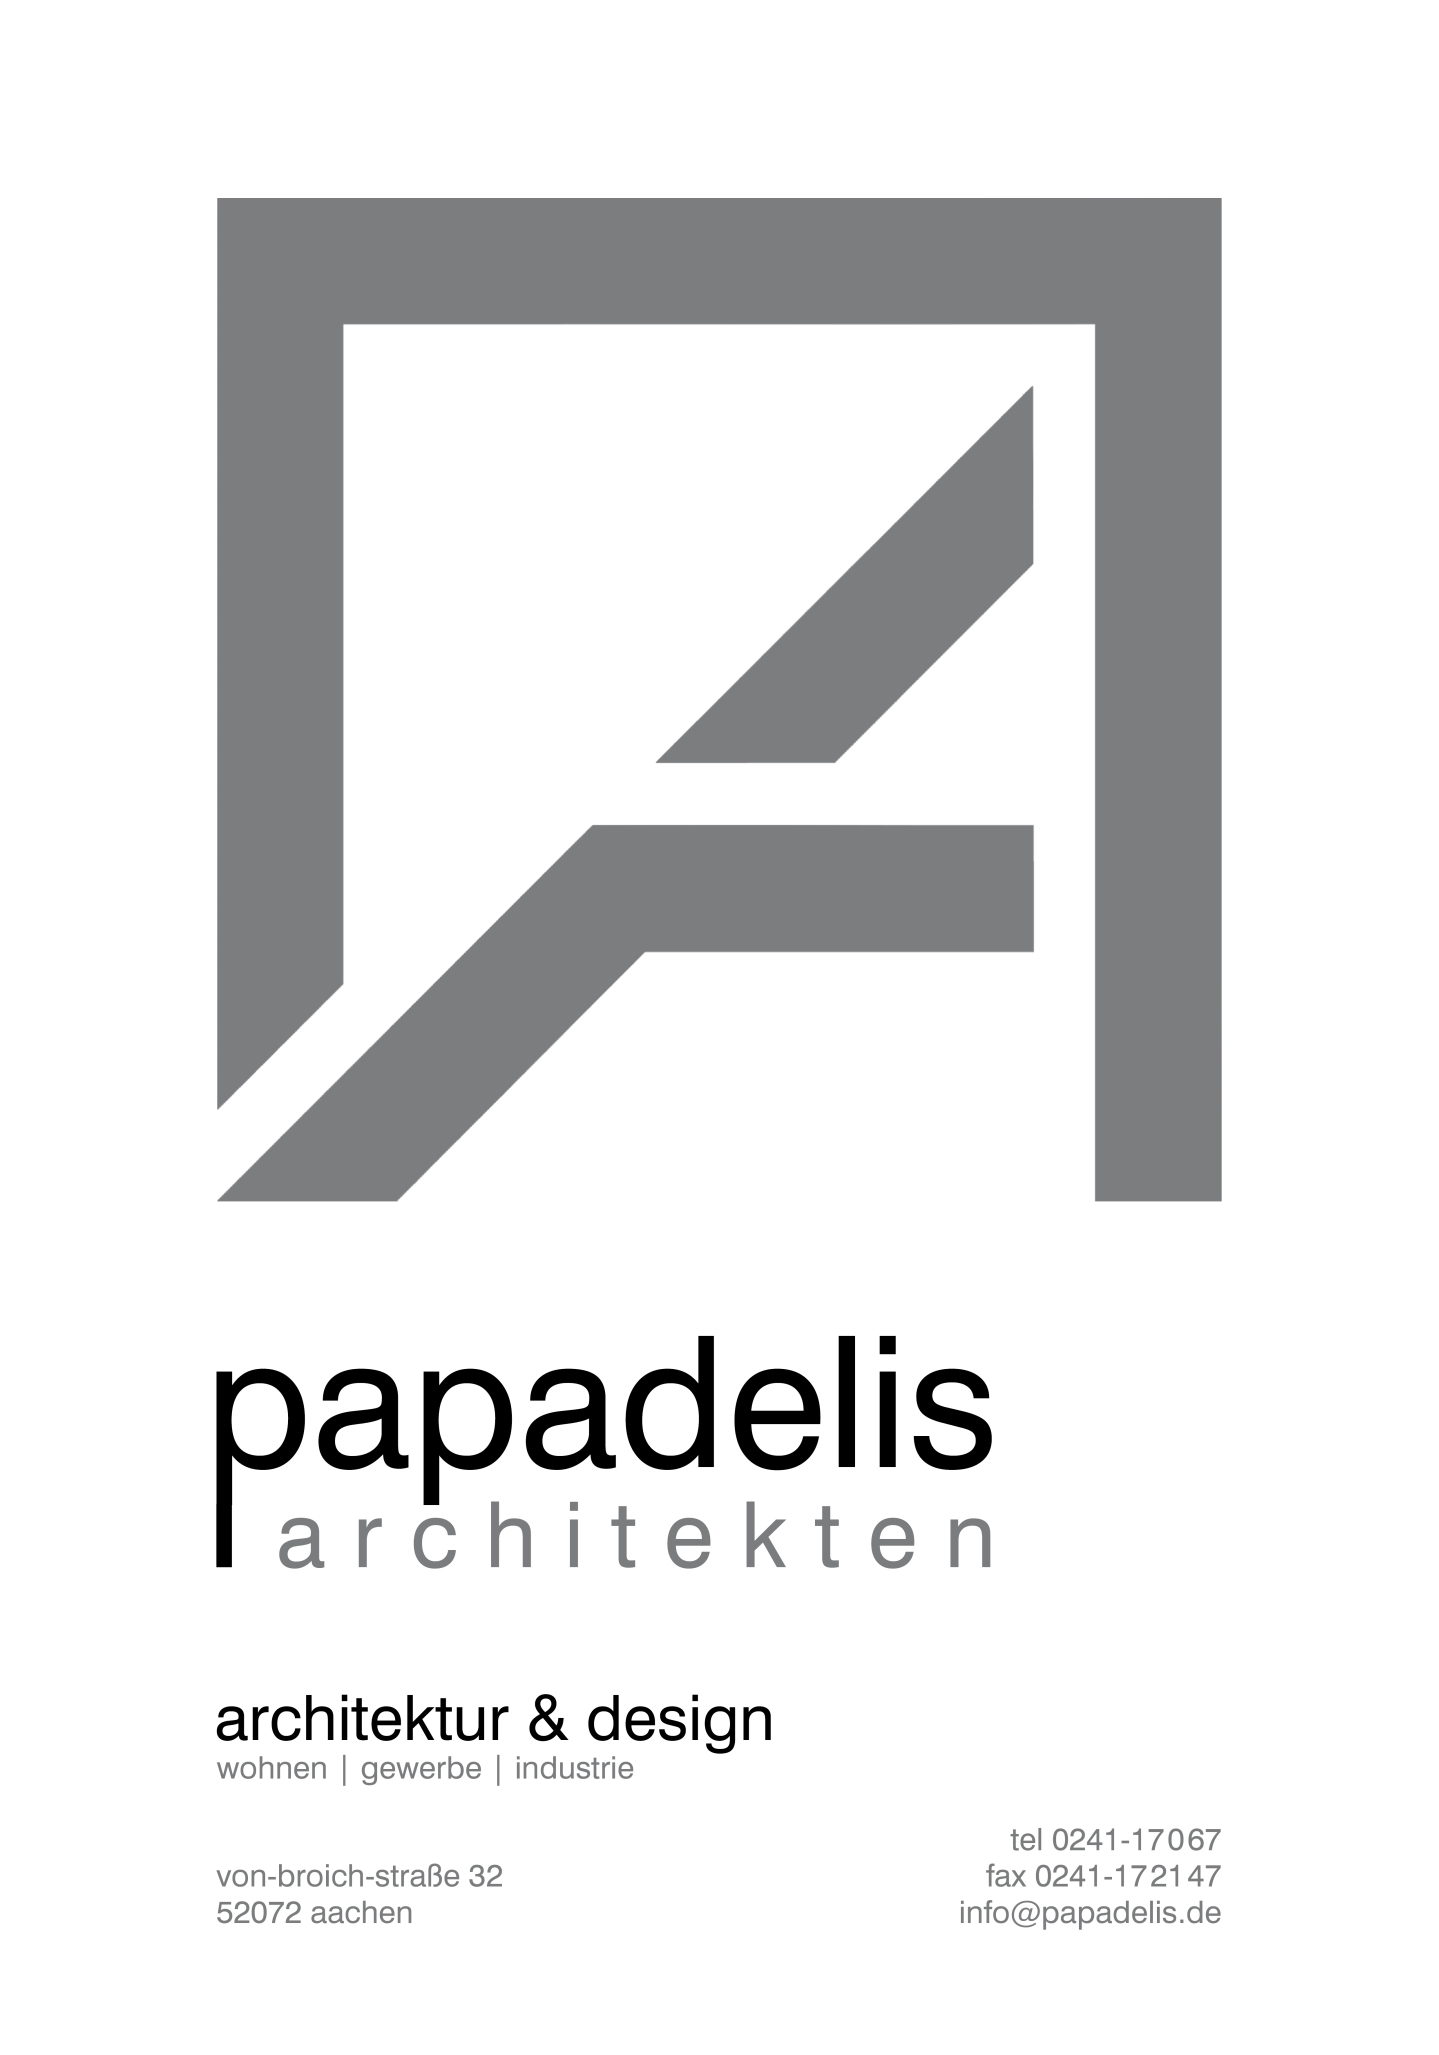 Georg Papadelis; Dipl.-Ing Architekt; Von-Broich-Strae 32; 52072 Aachen; Telefon, Fax, Mobil